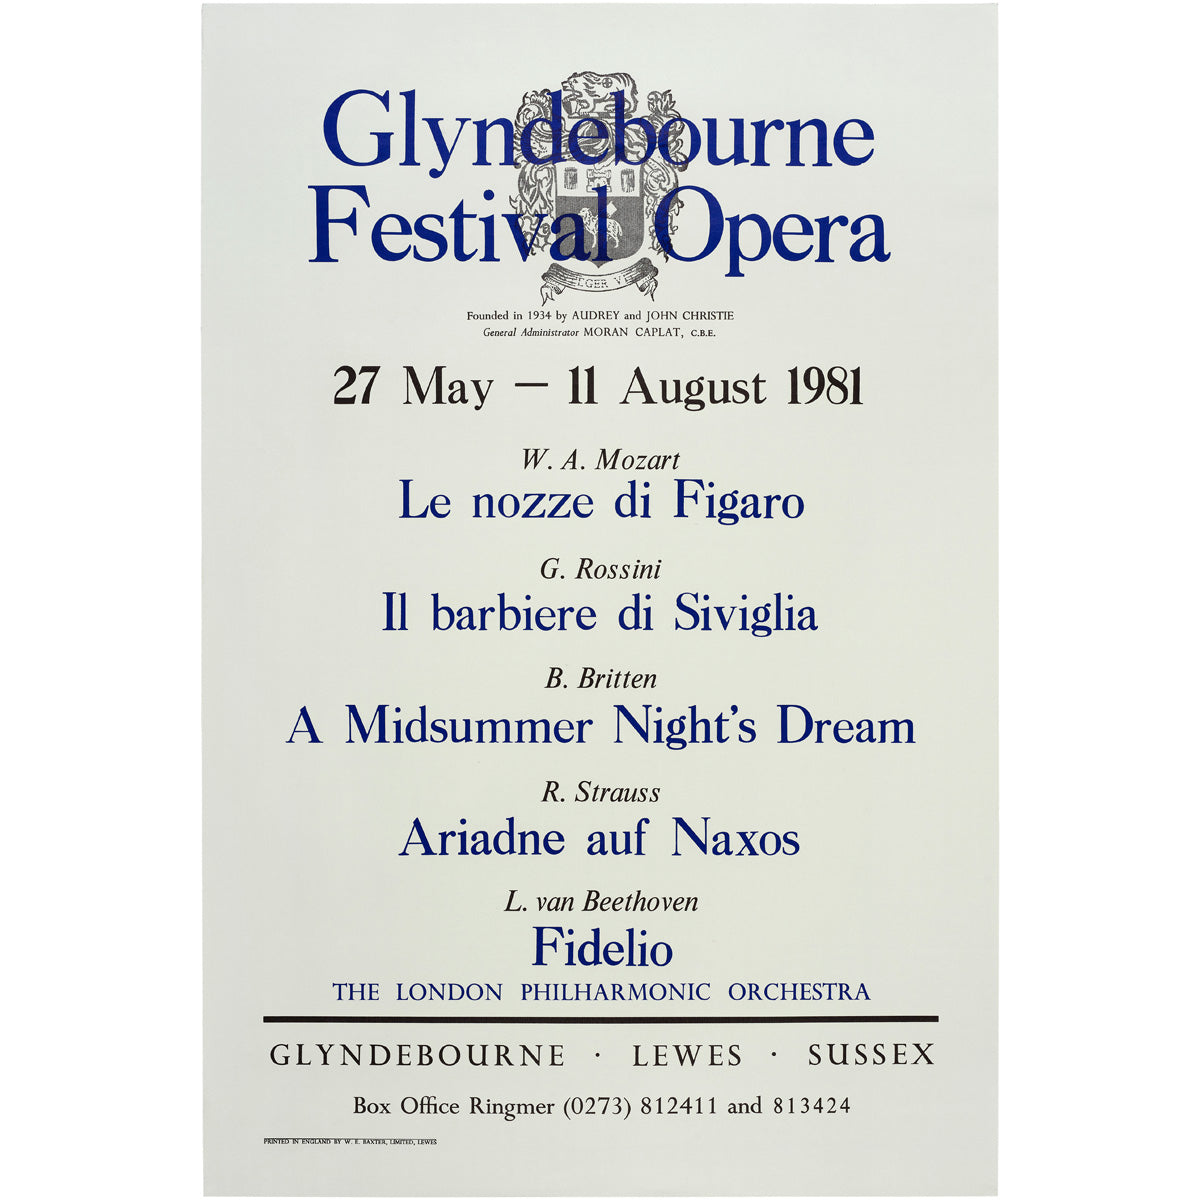 Glyndebourne Festival Opera 1981 Poster Glyndebourne Shop